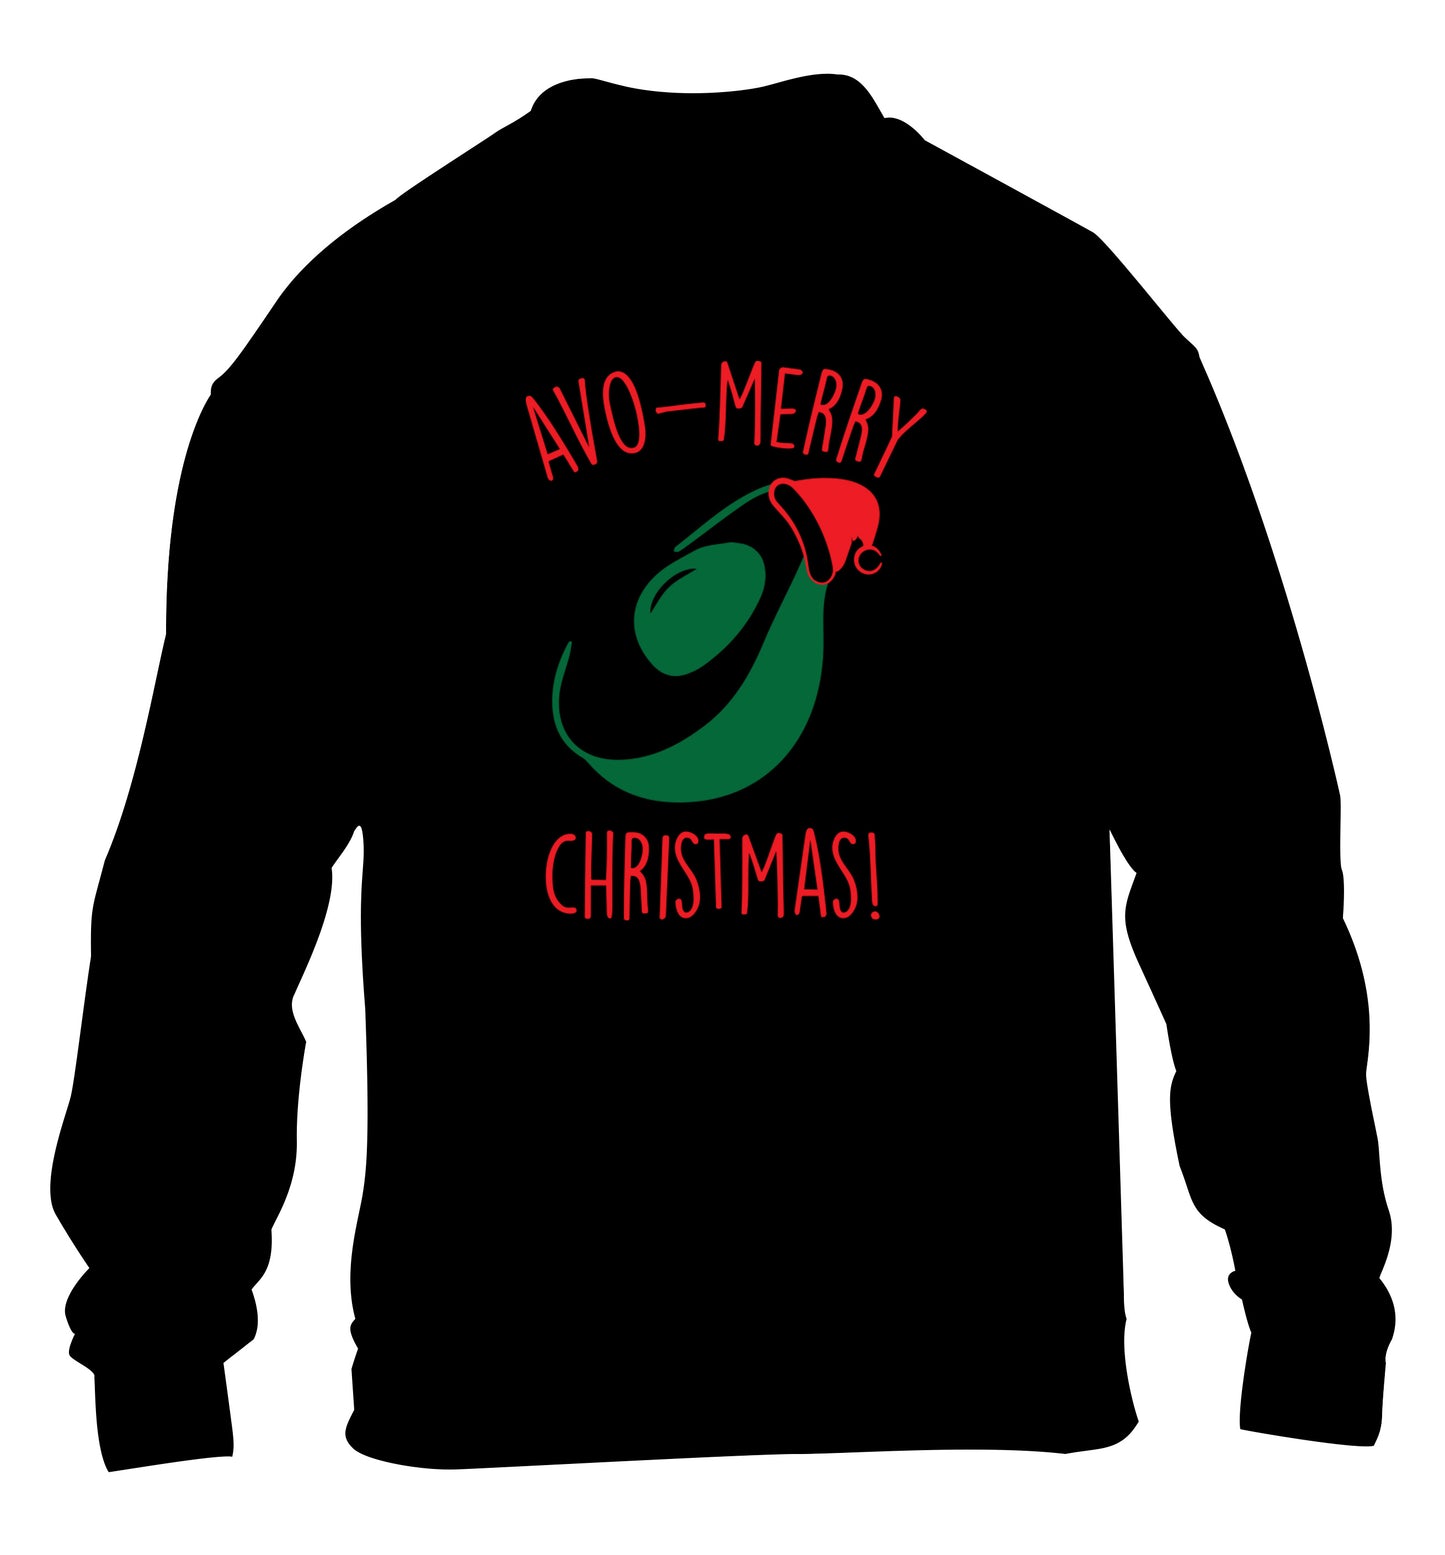 Avo-Merry Christmas children's black sweater 12-13 Years